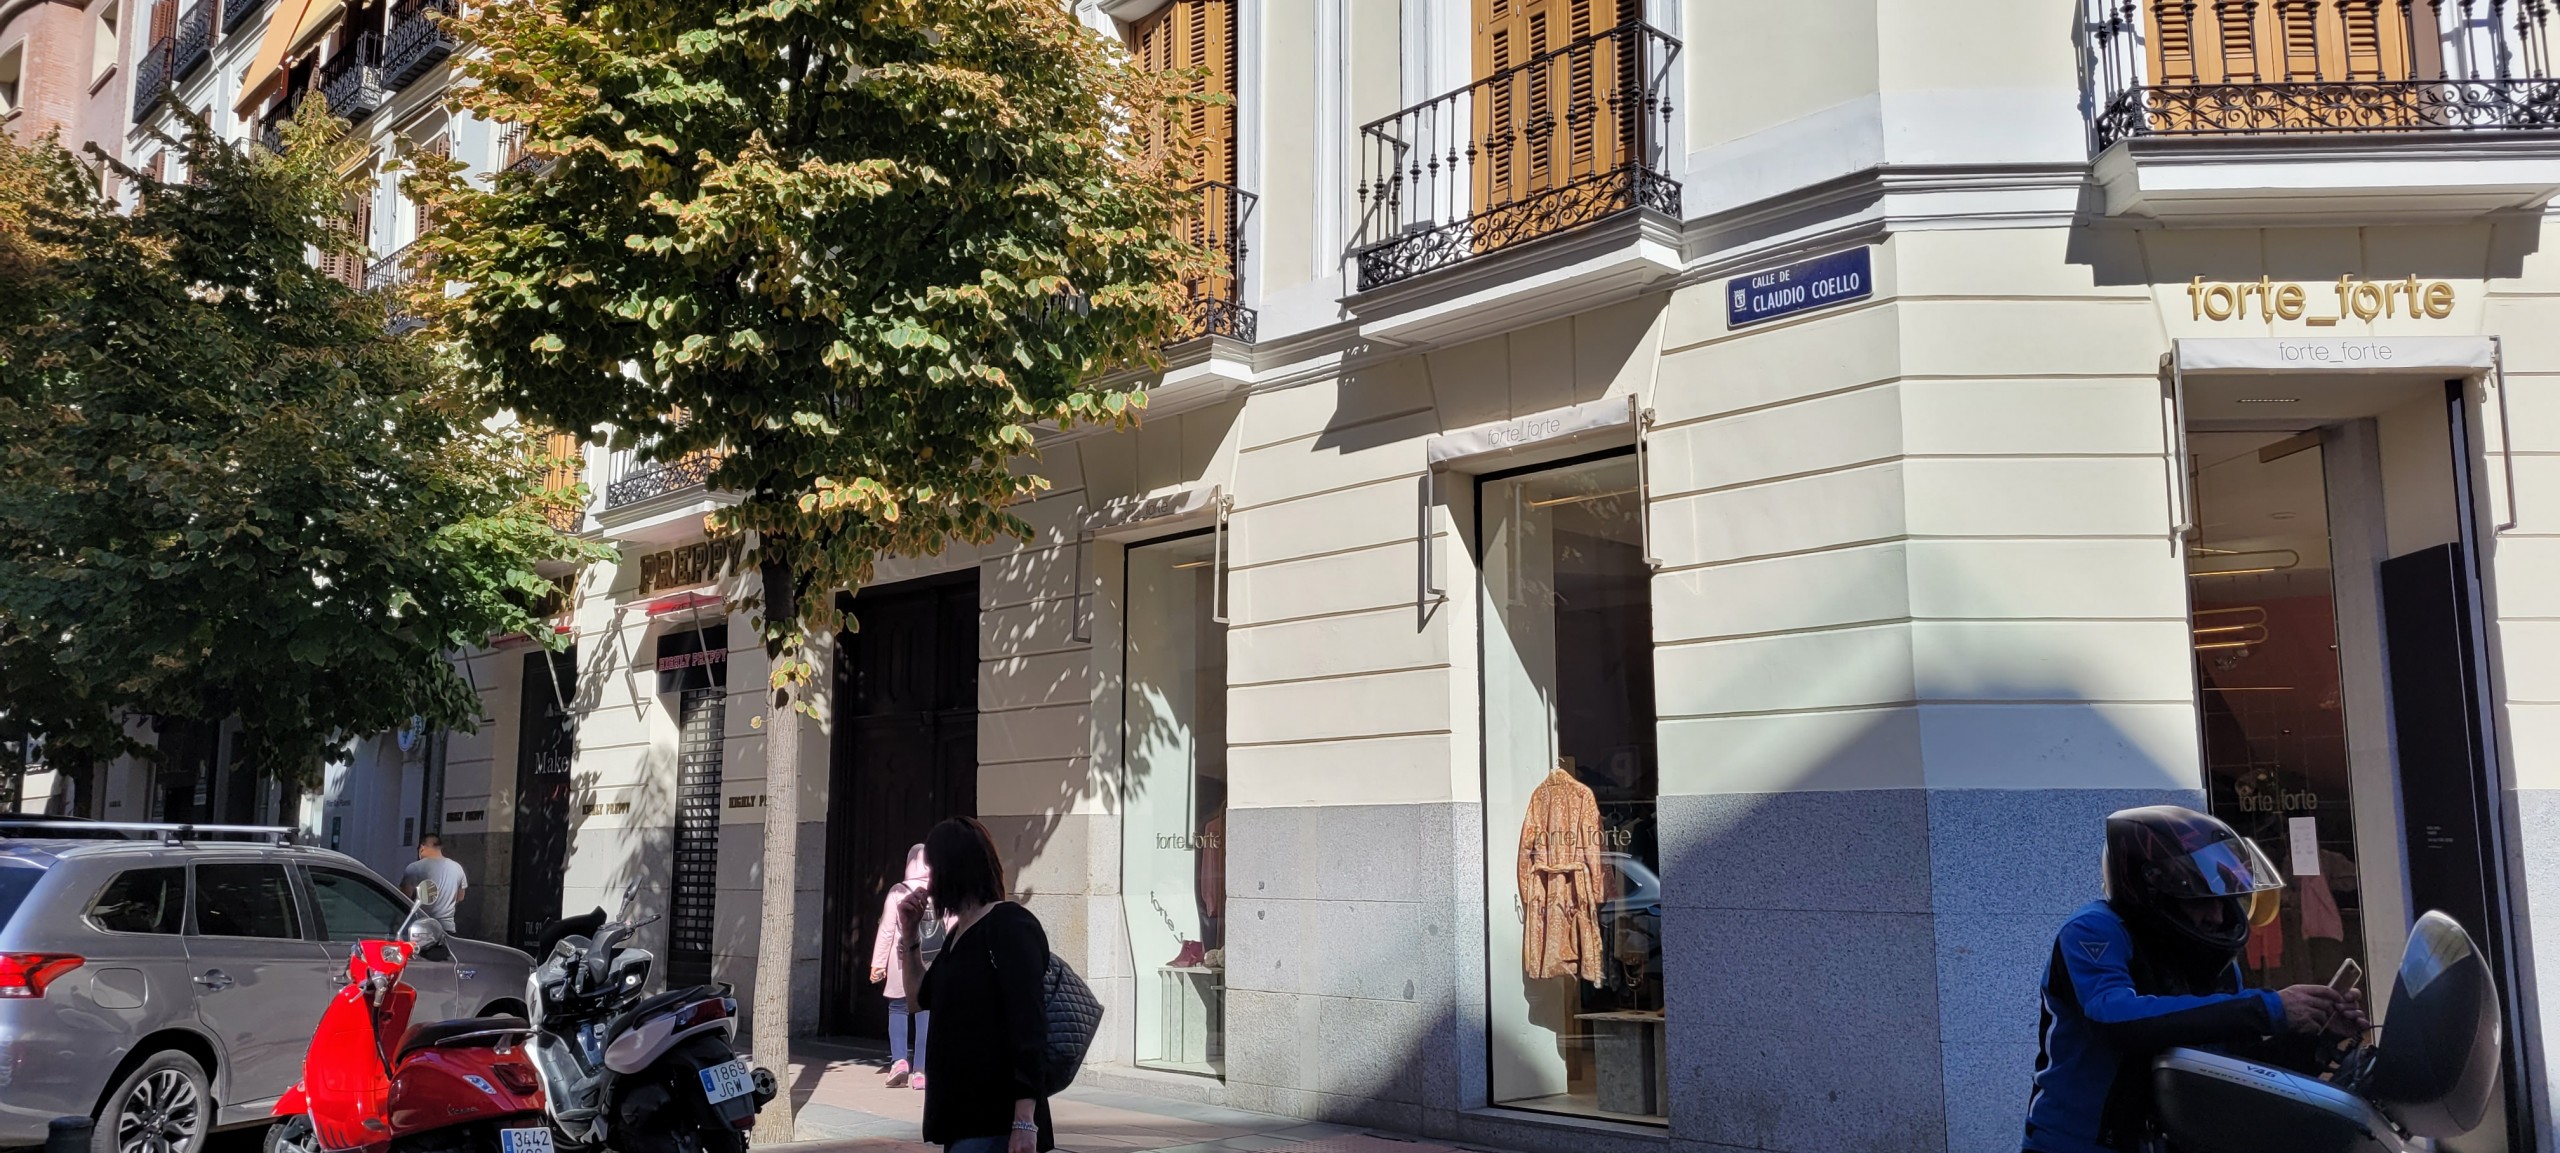 Local comercial en alquiler – Claudio Coello, 72 Madrid Barrio Salamanca